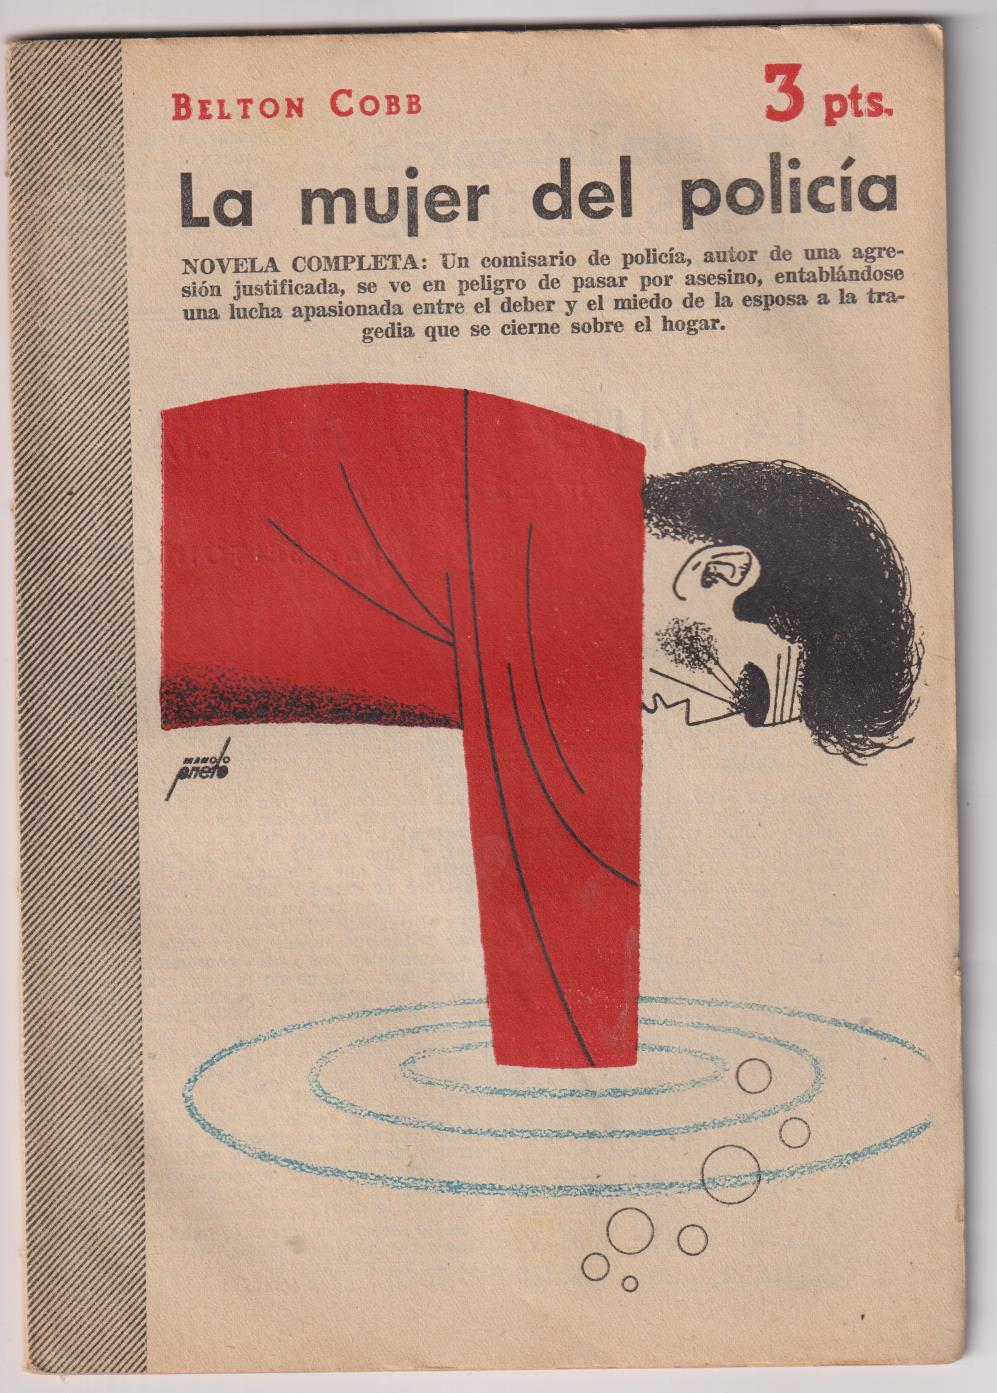 Revista Literaria Novelas y Cuentos nº 1200. Belton Cobb. la mujer del policía, 1954